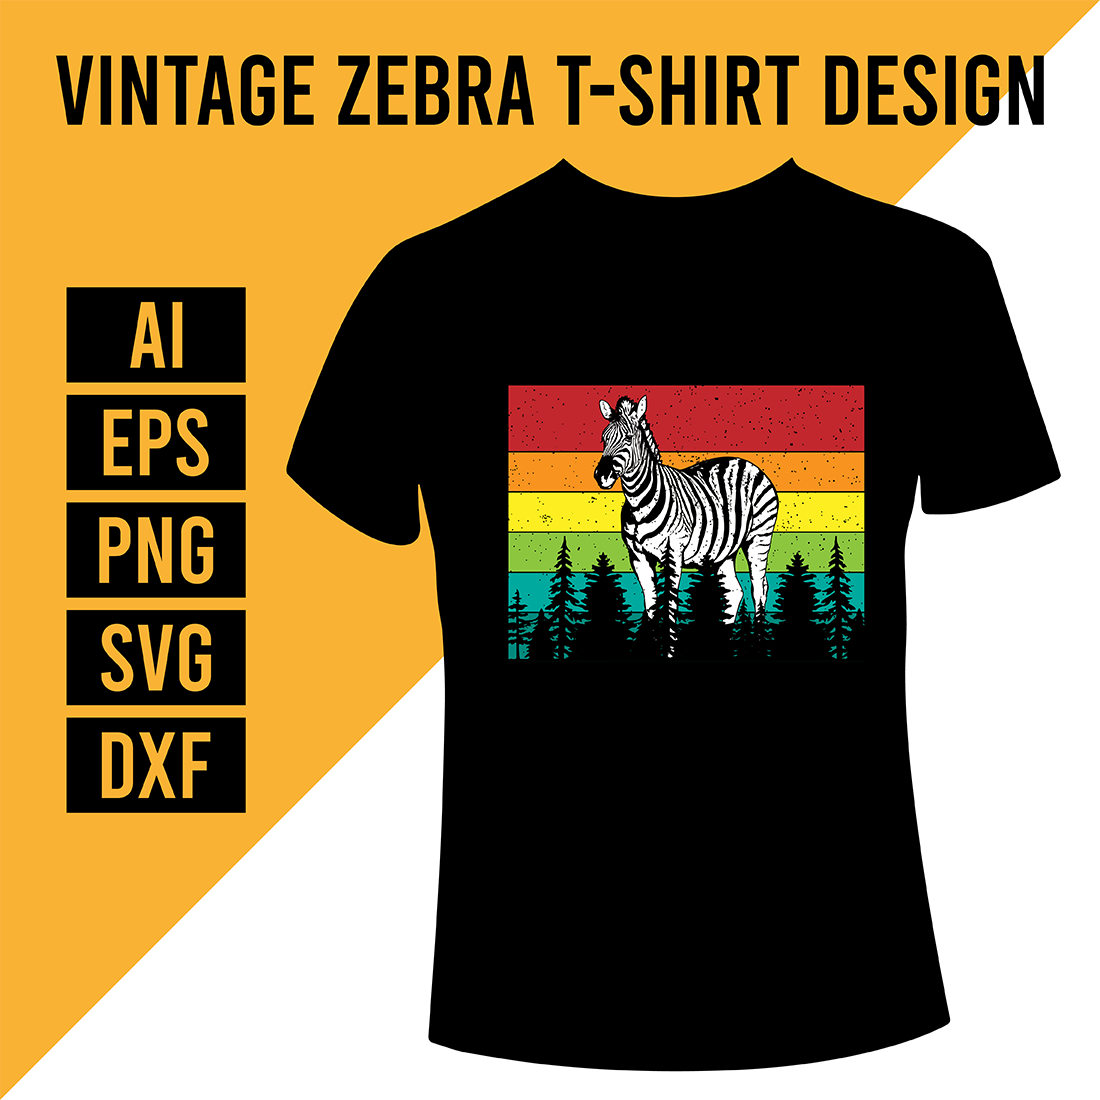 Vintage Zebra T-Shirt Design cover image.